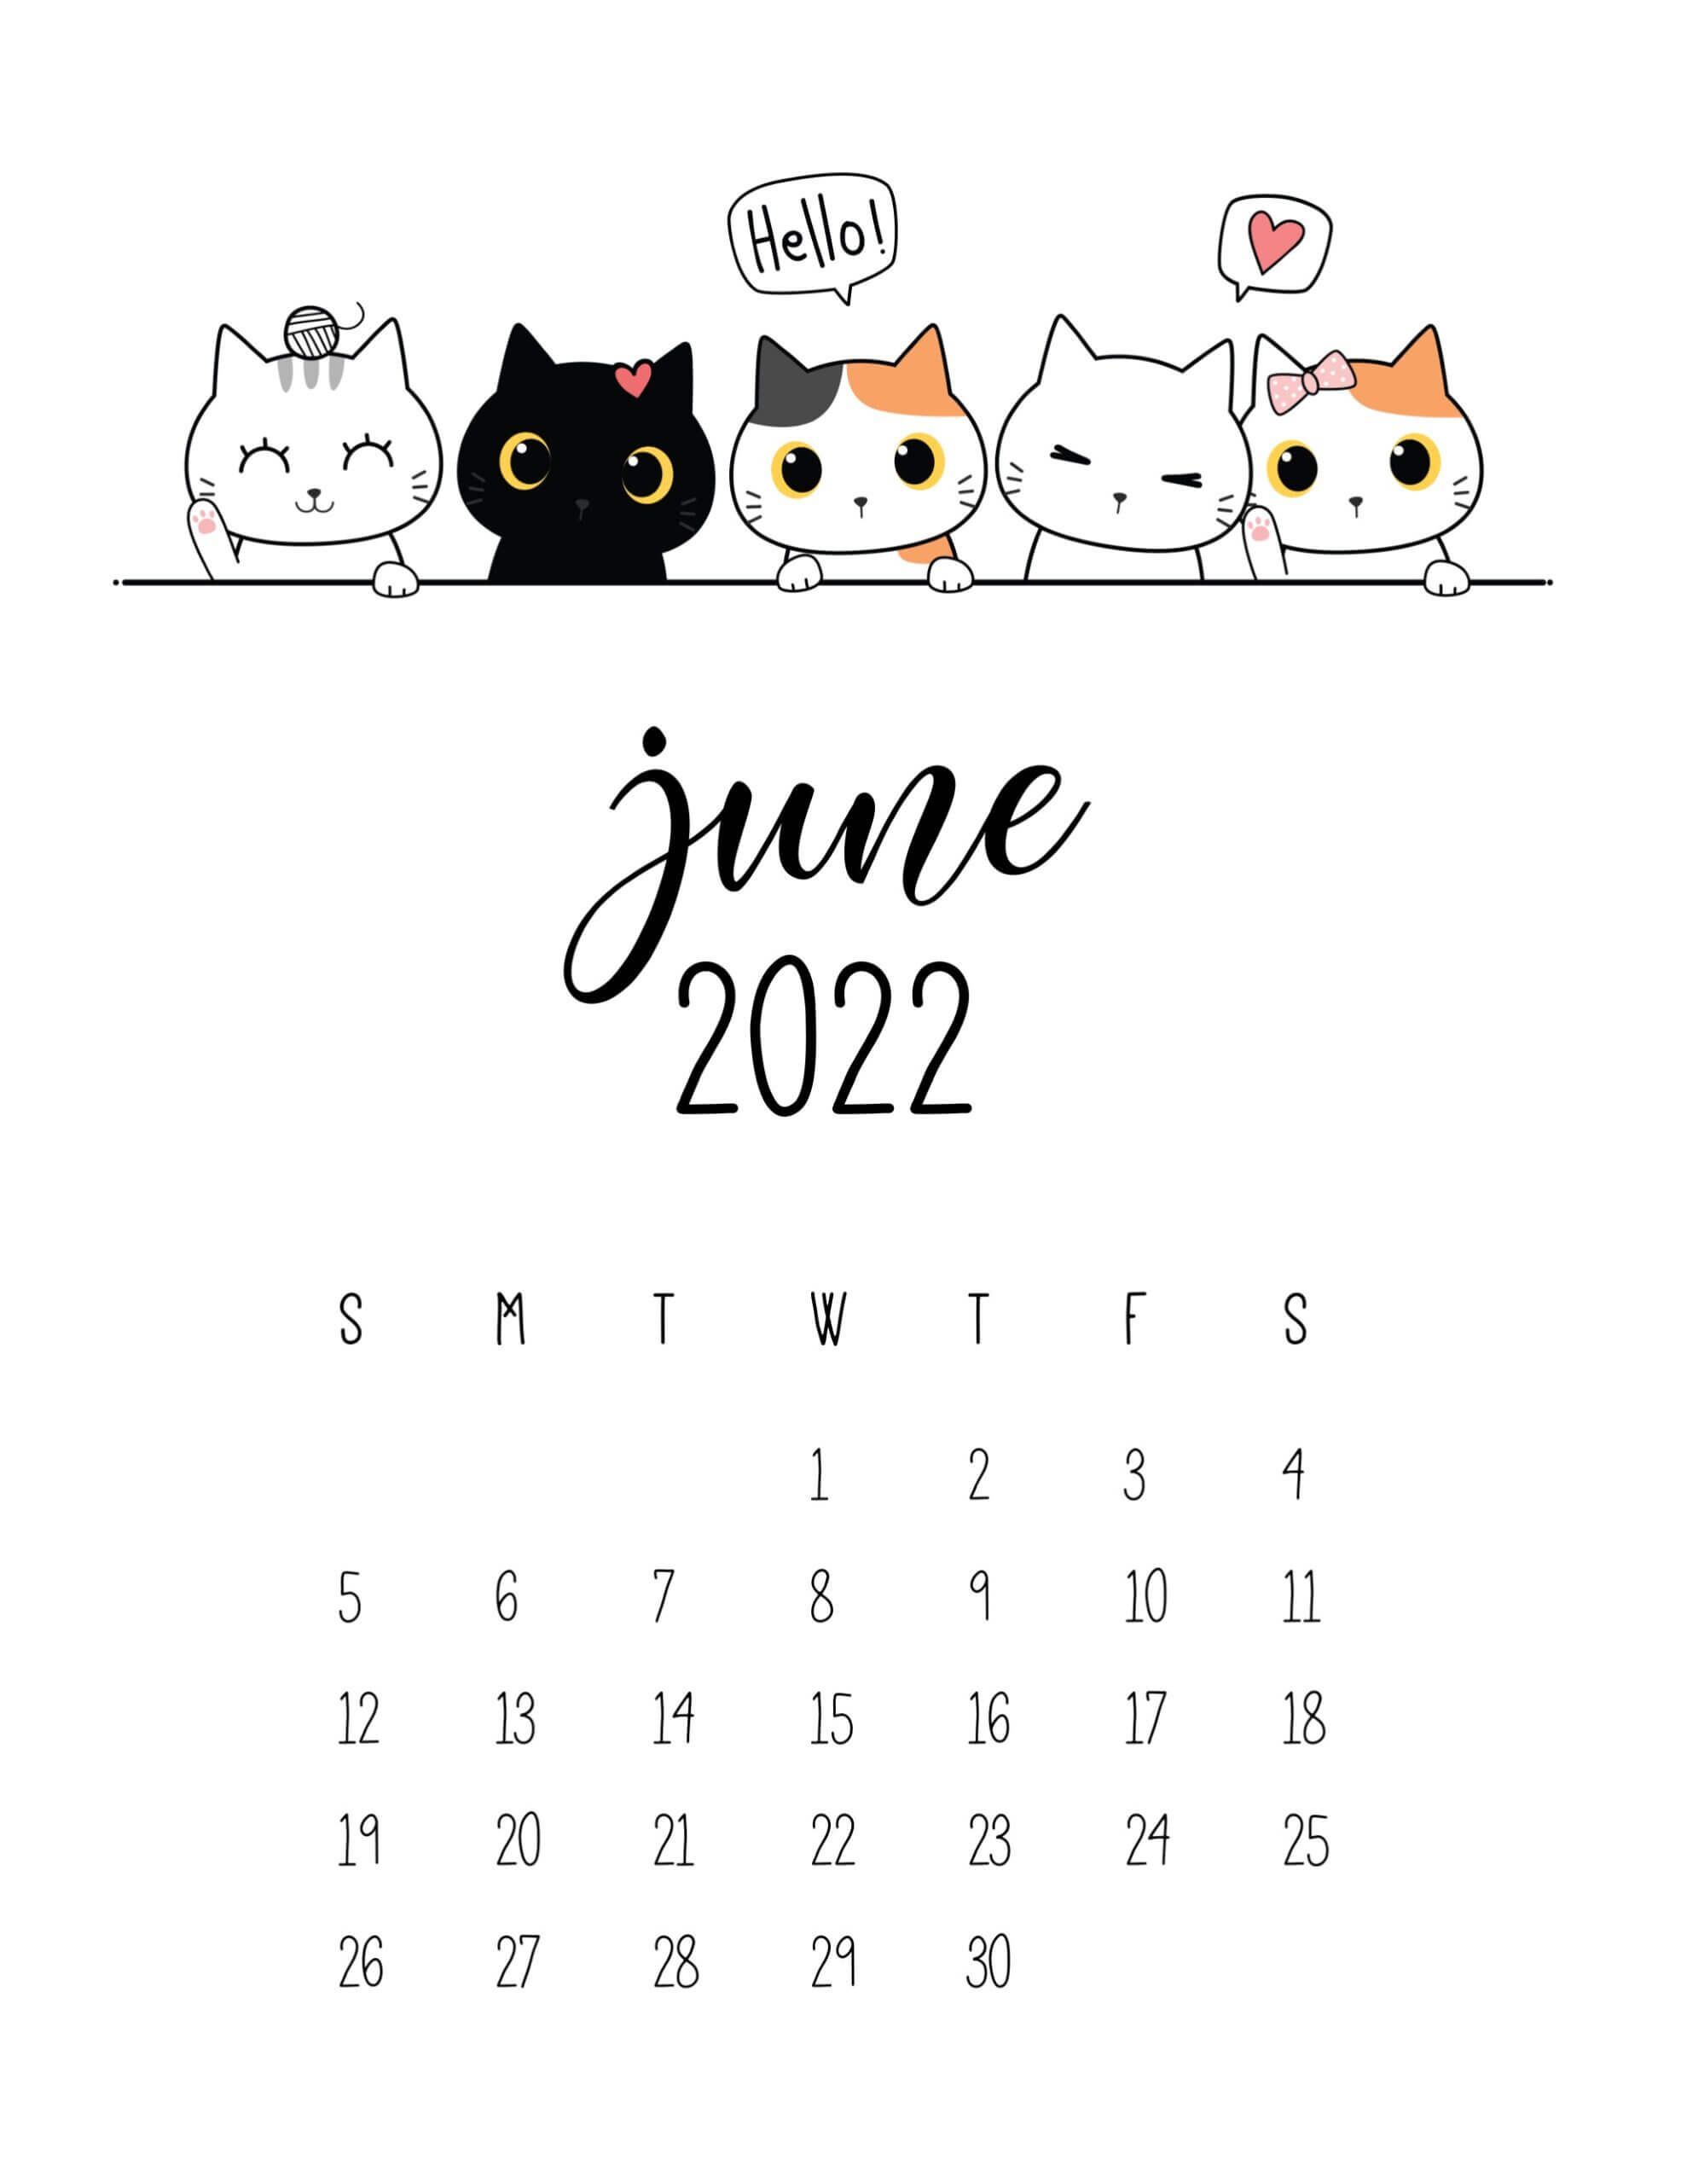 Cute June 2022 Calendar